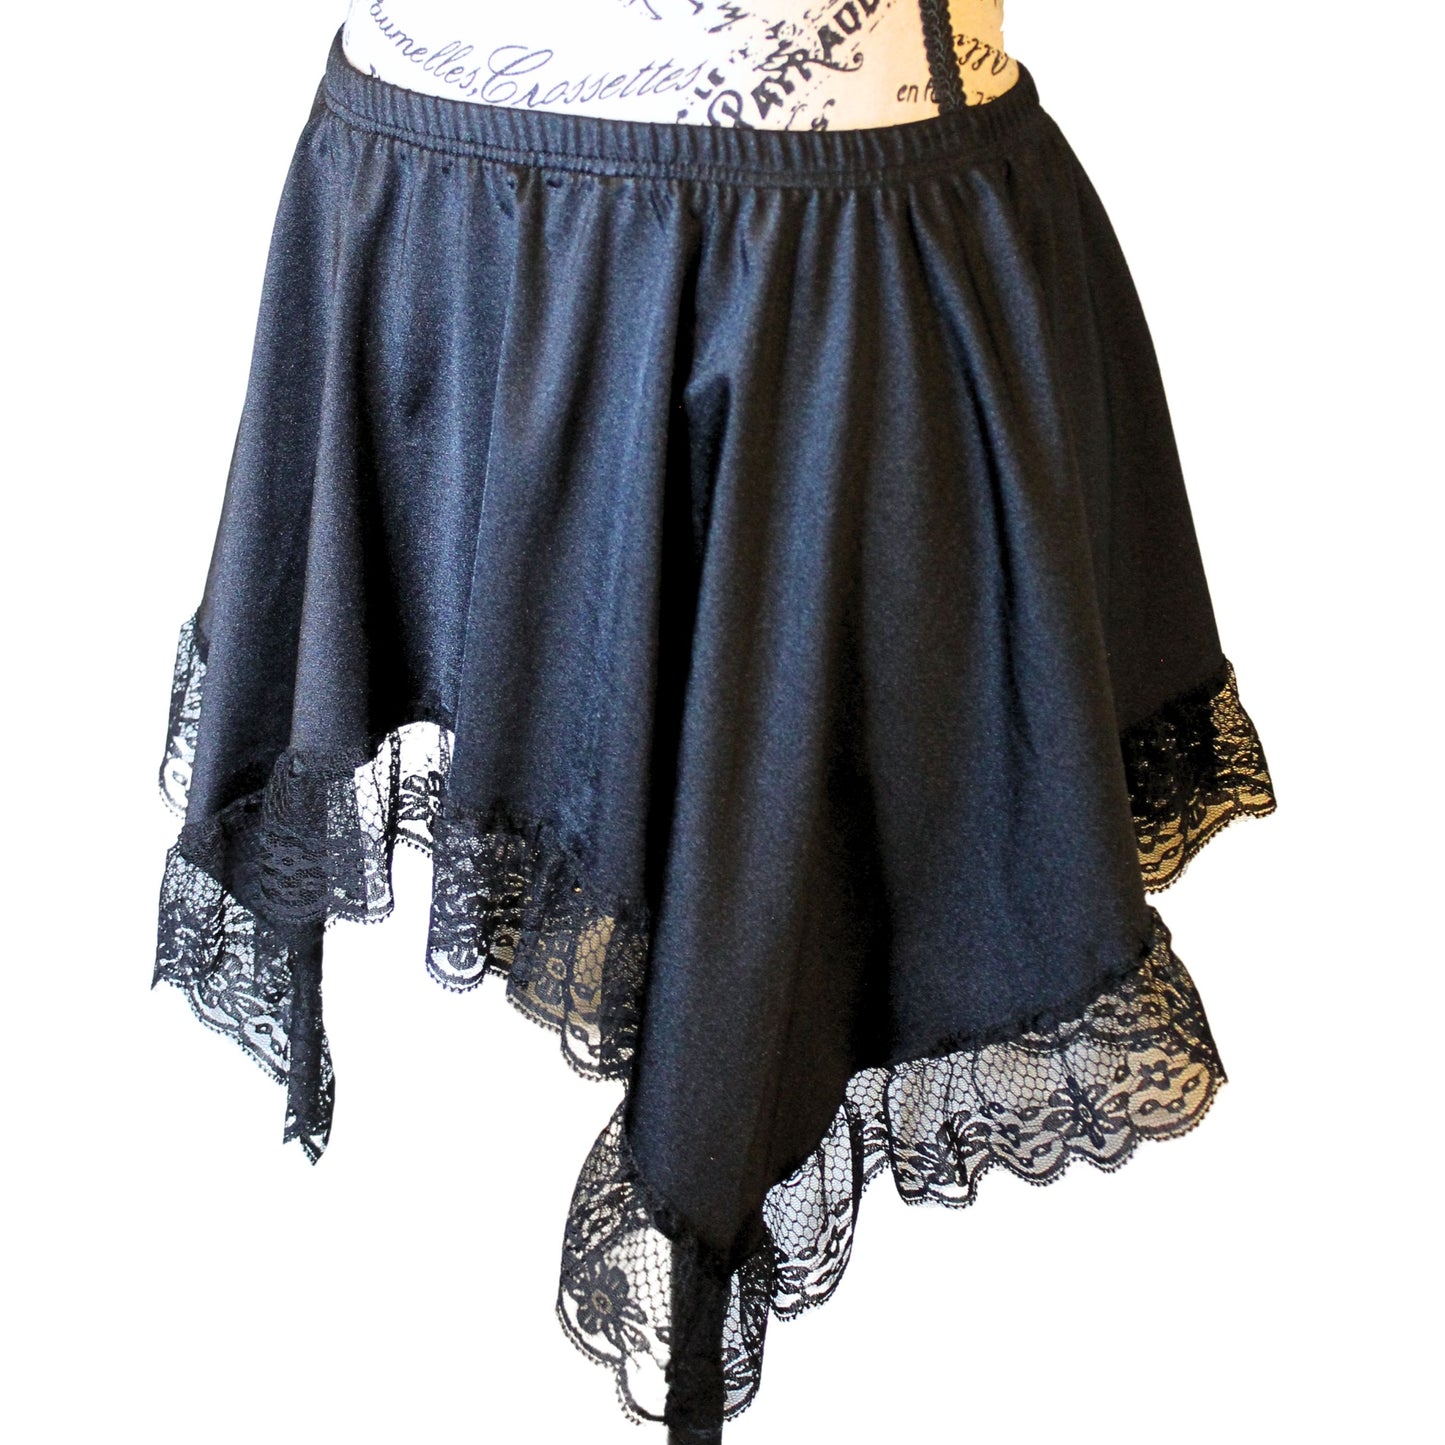 The VM Short Asymmetrical Skirt